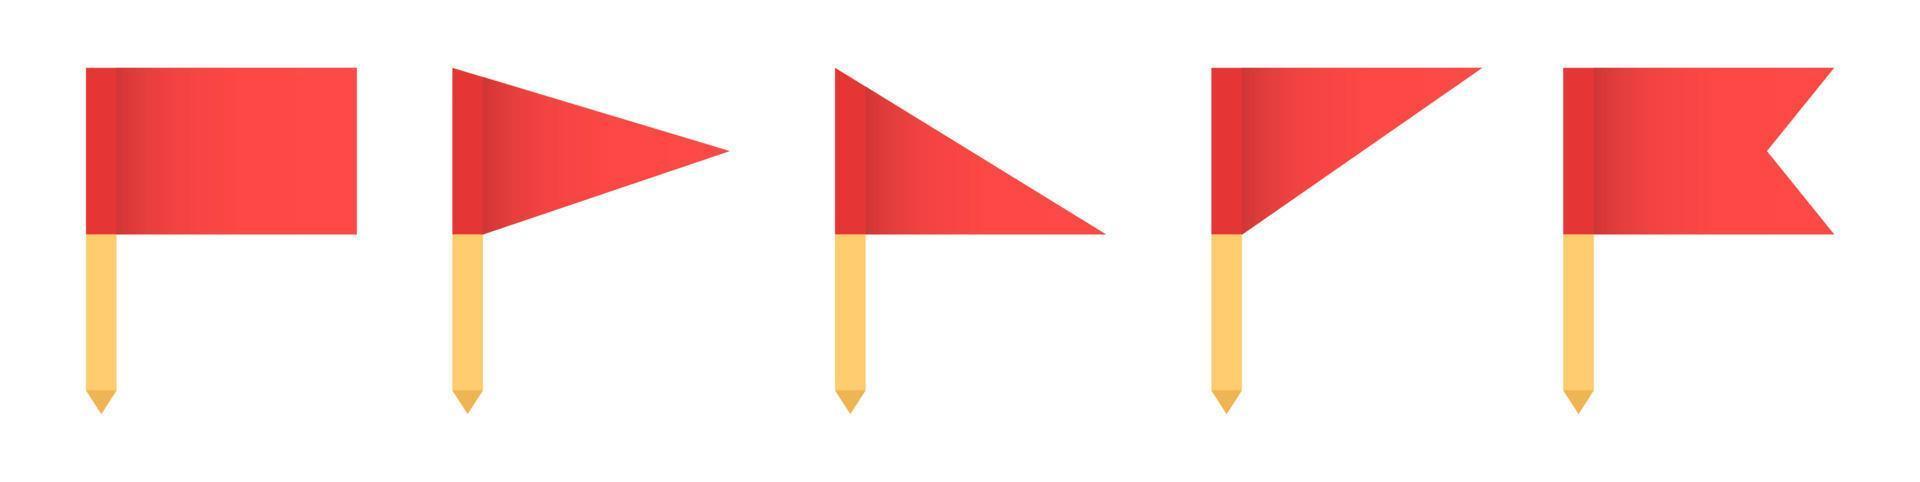 satz der roten flaggenikonen-vektorillustration. rote Fahnen auf gelben Dauben-Symbol. konzept von zeiger, tag und wichtigem zeichen. vektor